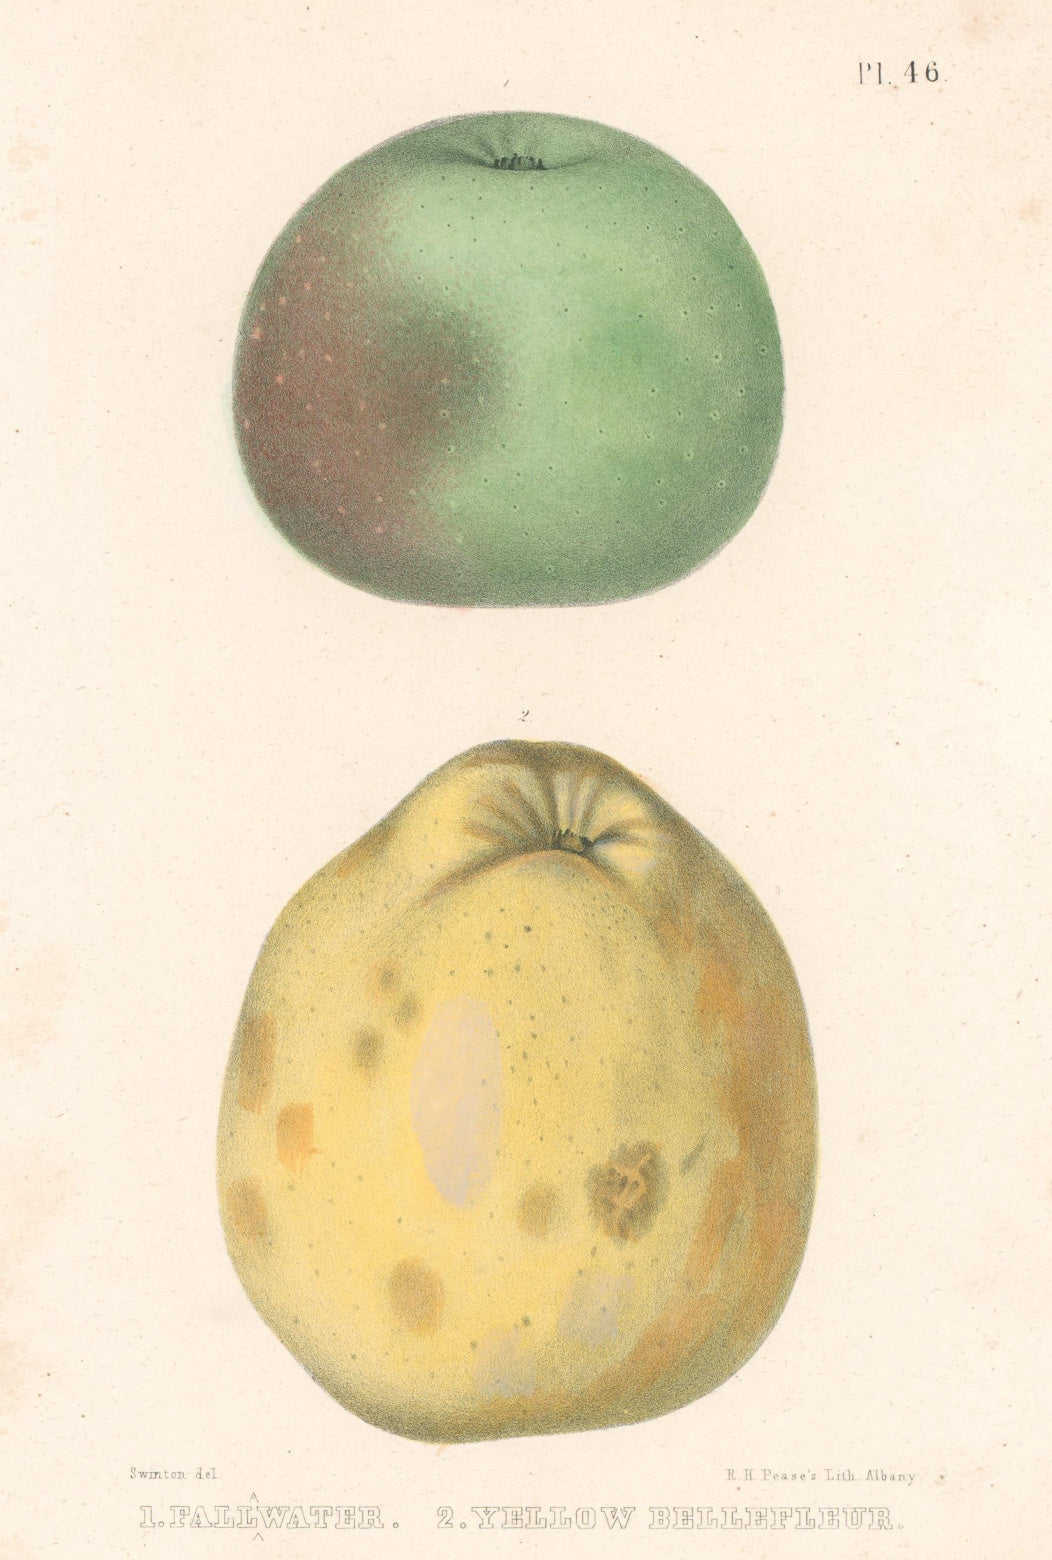 Swinton “Fallawater & Yellow Bellefleur”  [apple]  Plate 46.